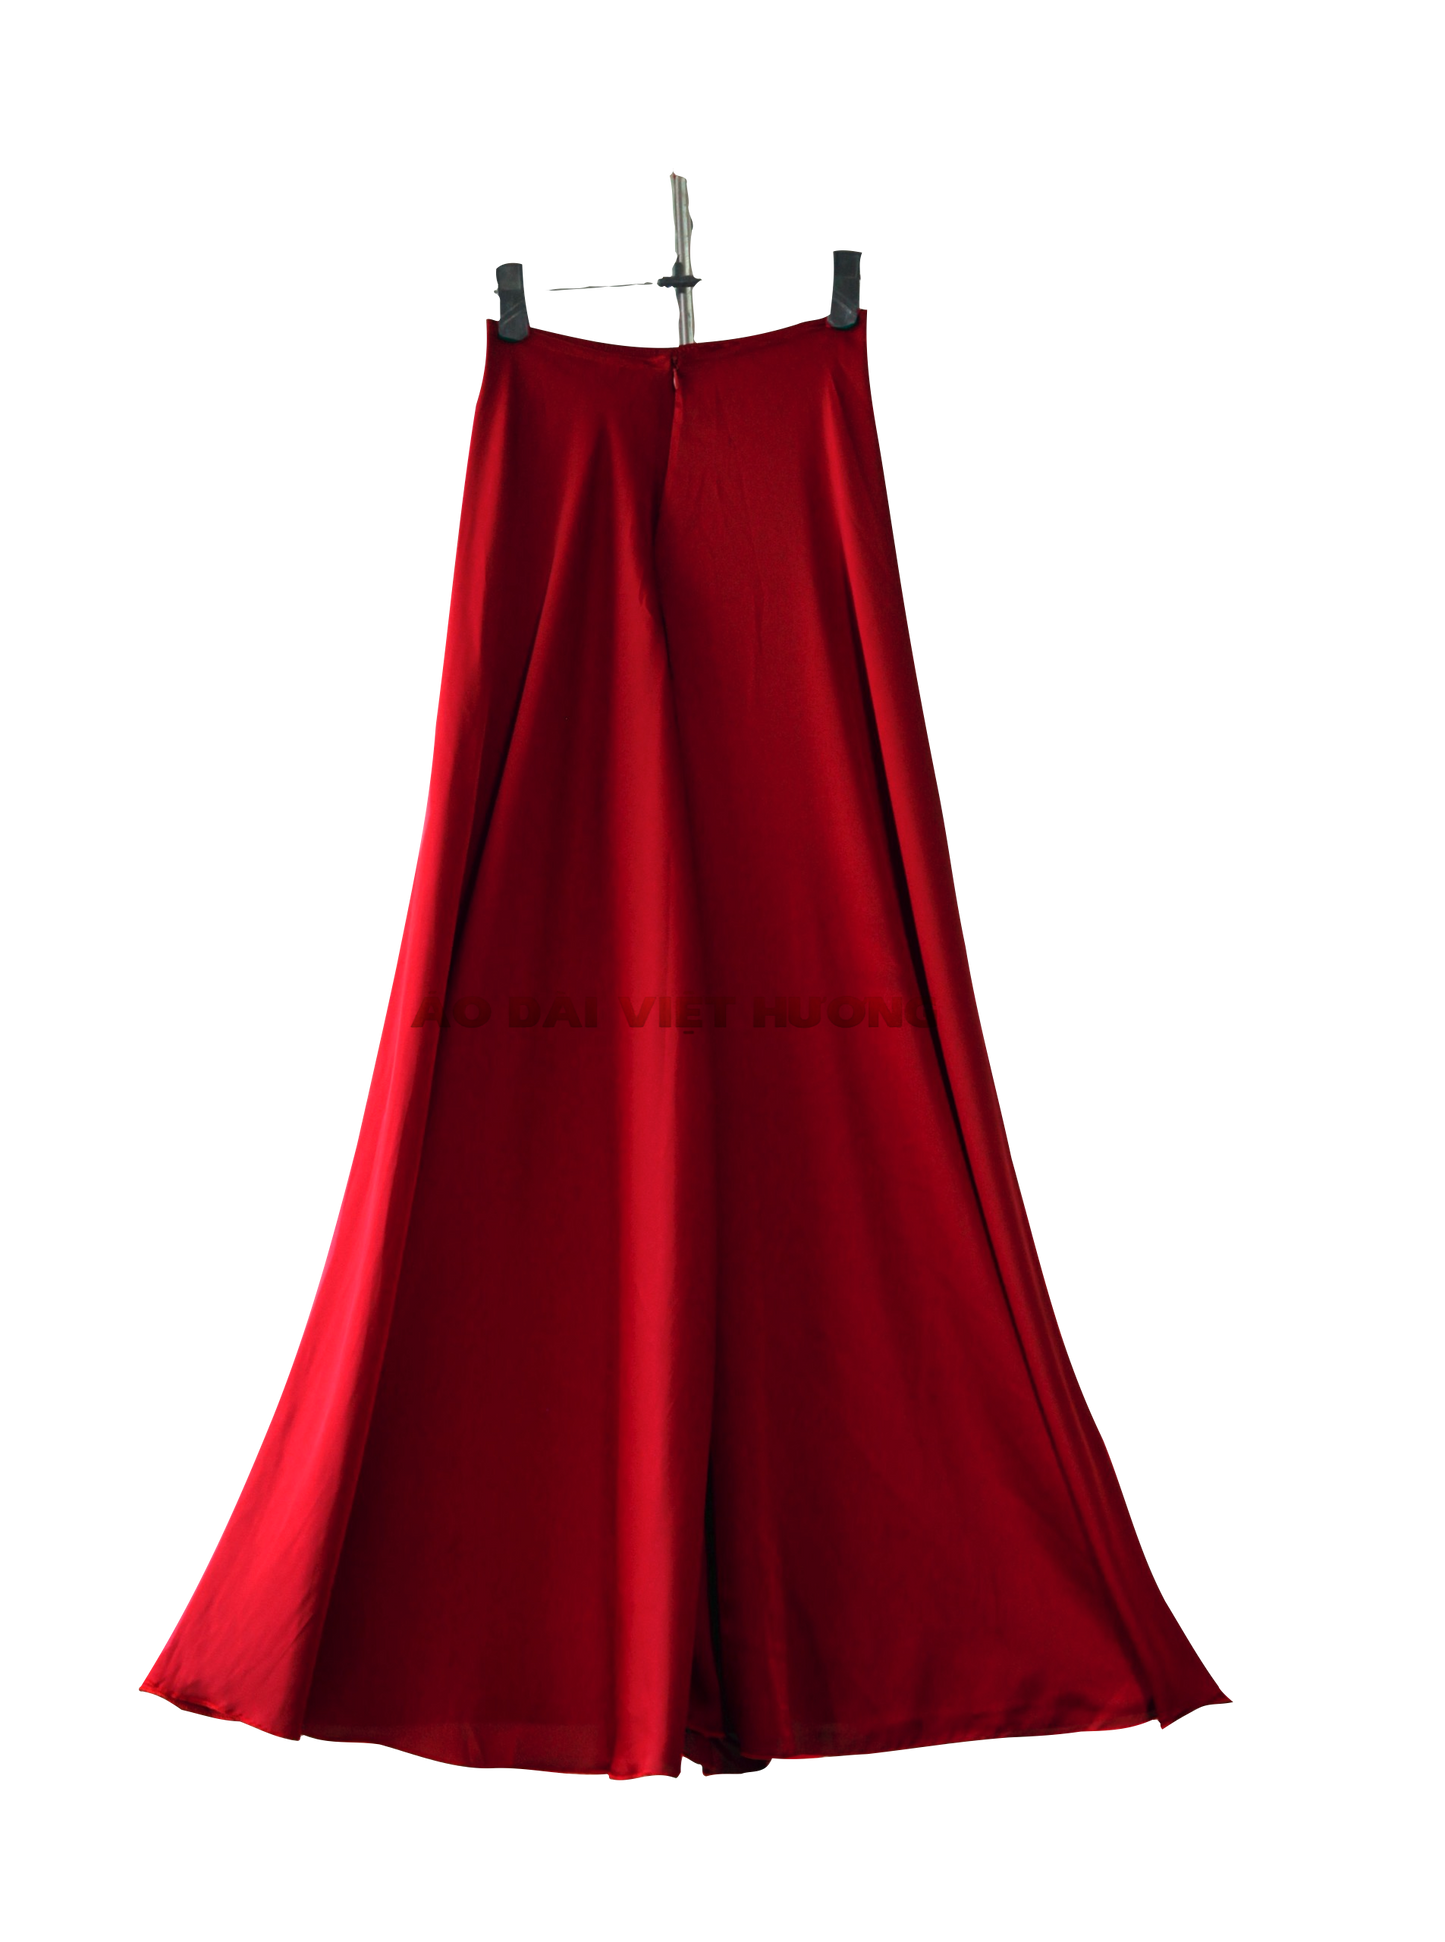 506 - Quần Váy Lụa Thái Tuấn Đỏ Carmine (Quần Váy Ống Xéo Lụa Thái Tuấn Đỏ Đô)